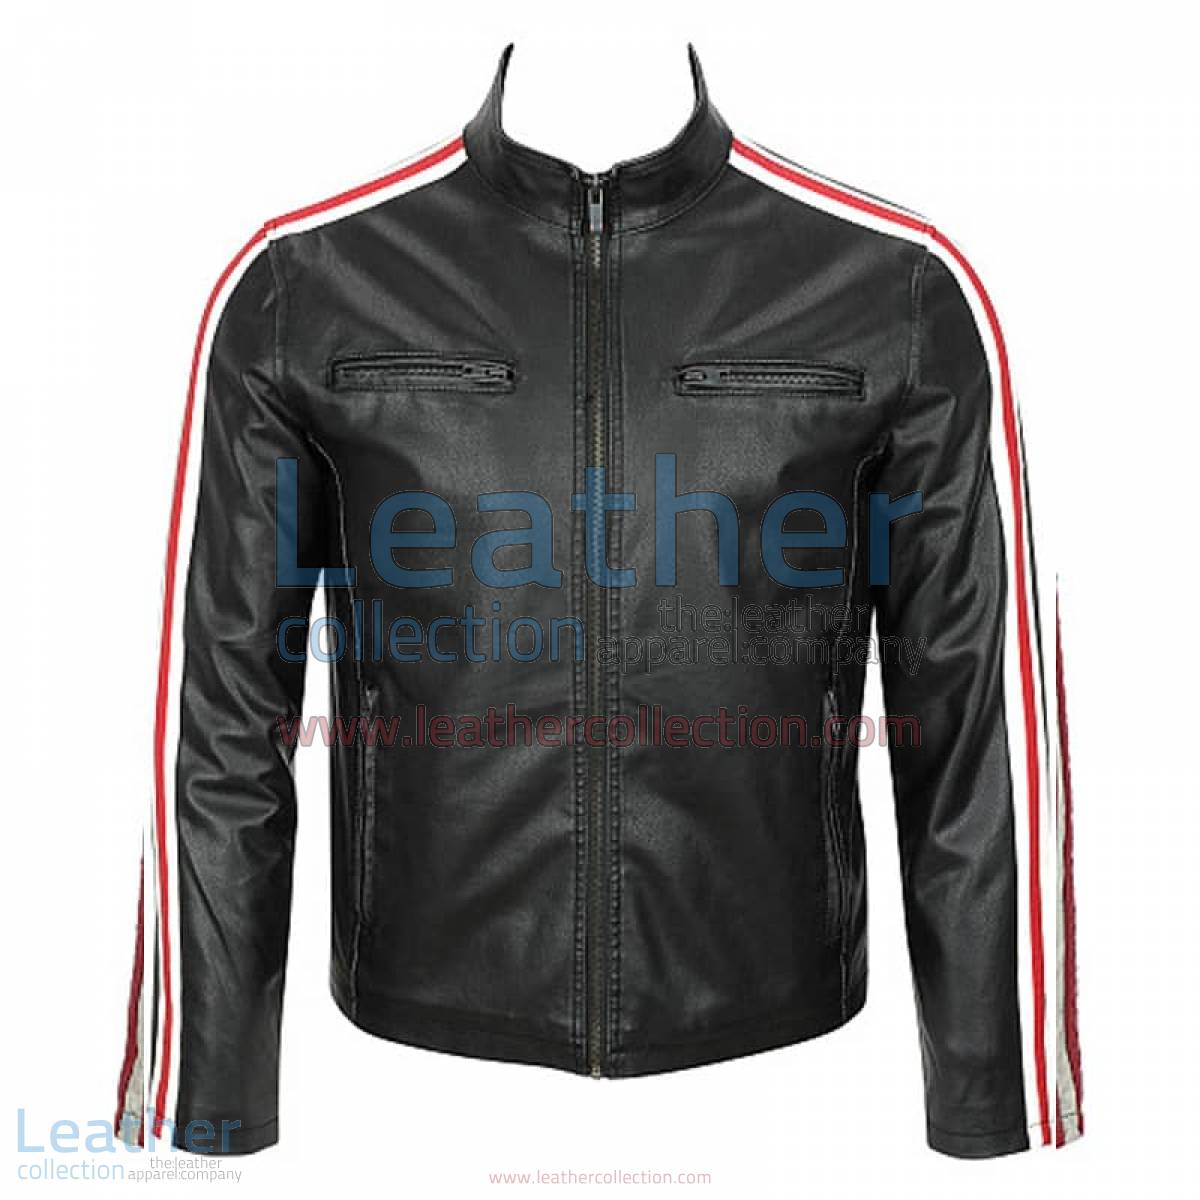 Leather Motorcycle Fashion Jacket | fashion jacket,motorcycle fashion